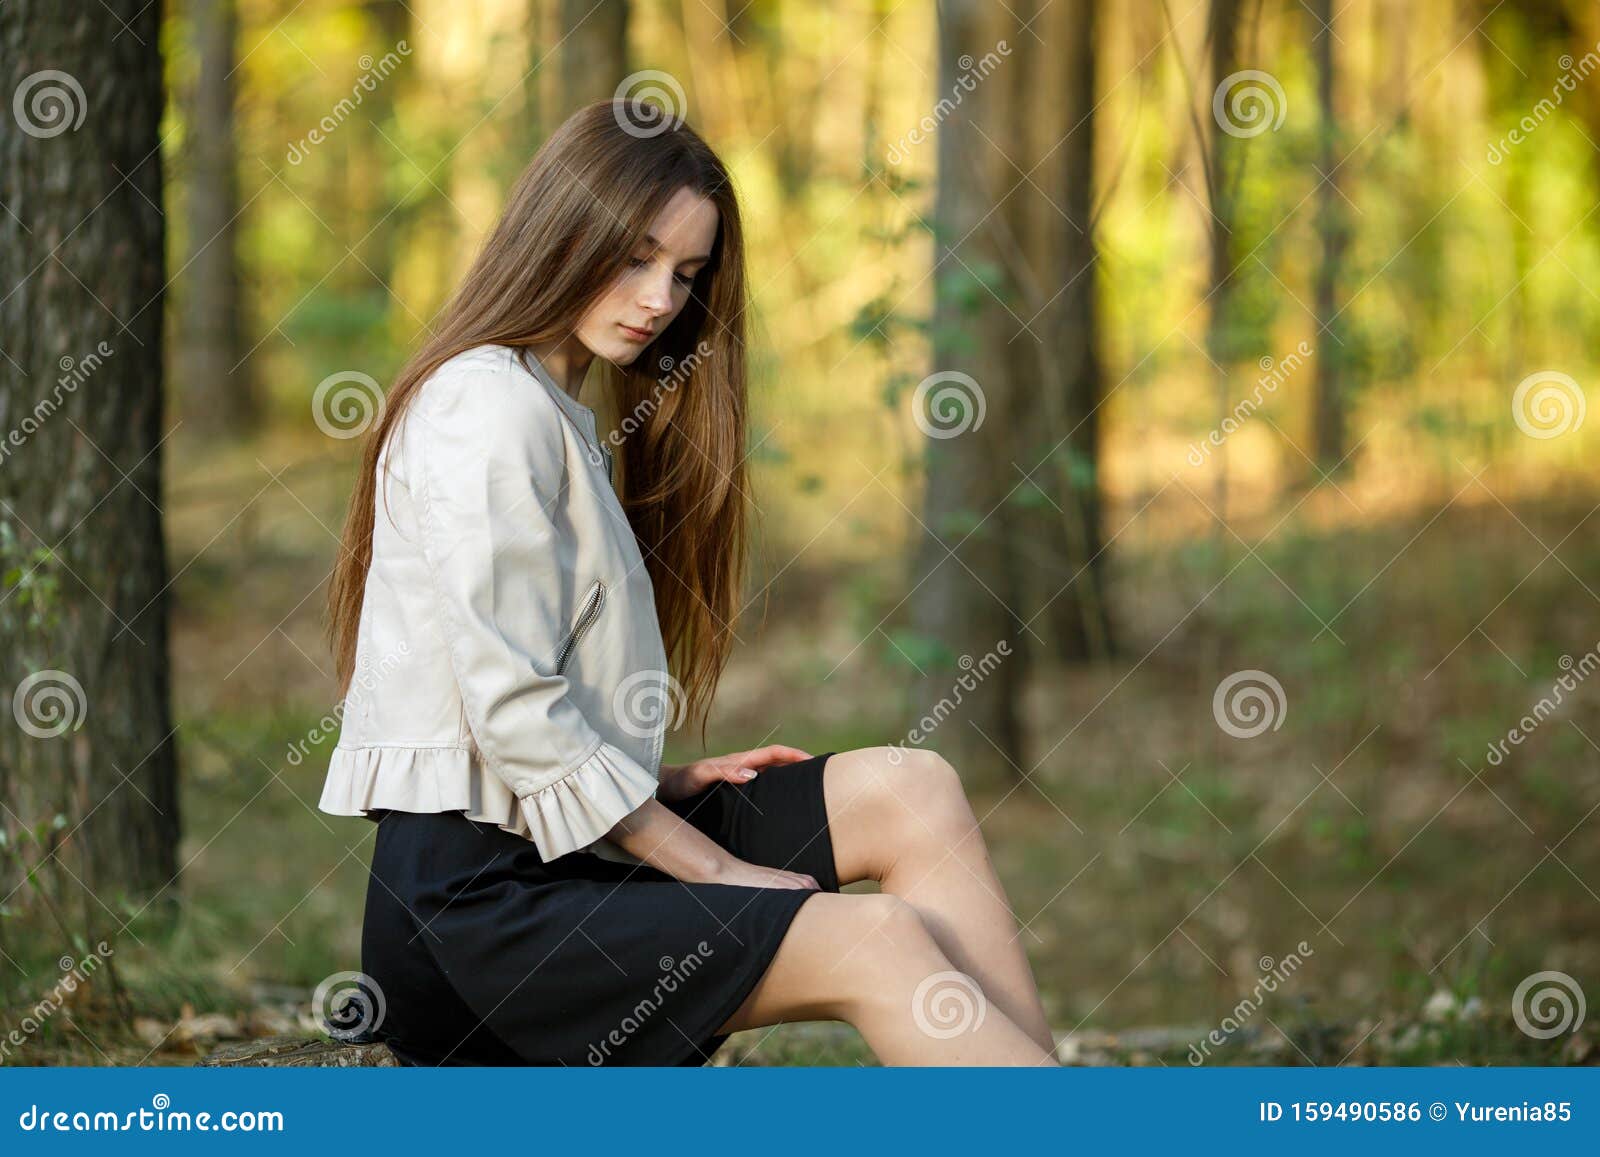 夕阳下 森林里一个年轻漂亮白人少女的画像 头发长长 衣着休闲库存照片 图片包括有